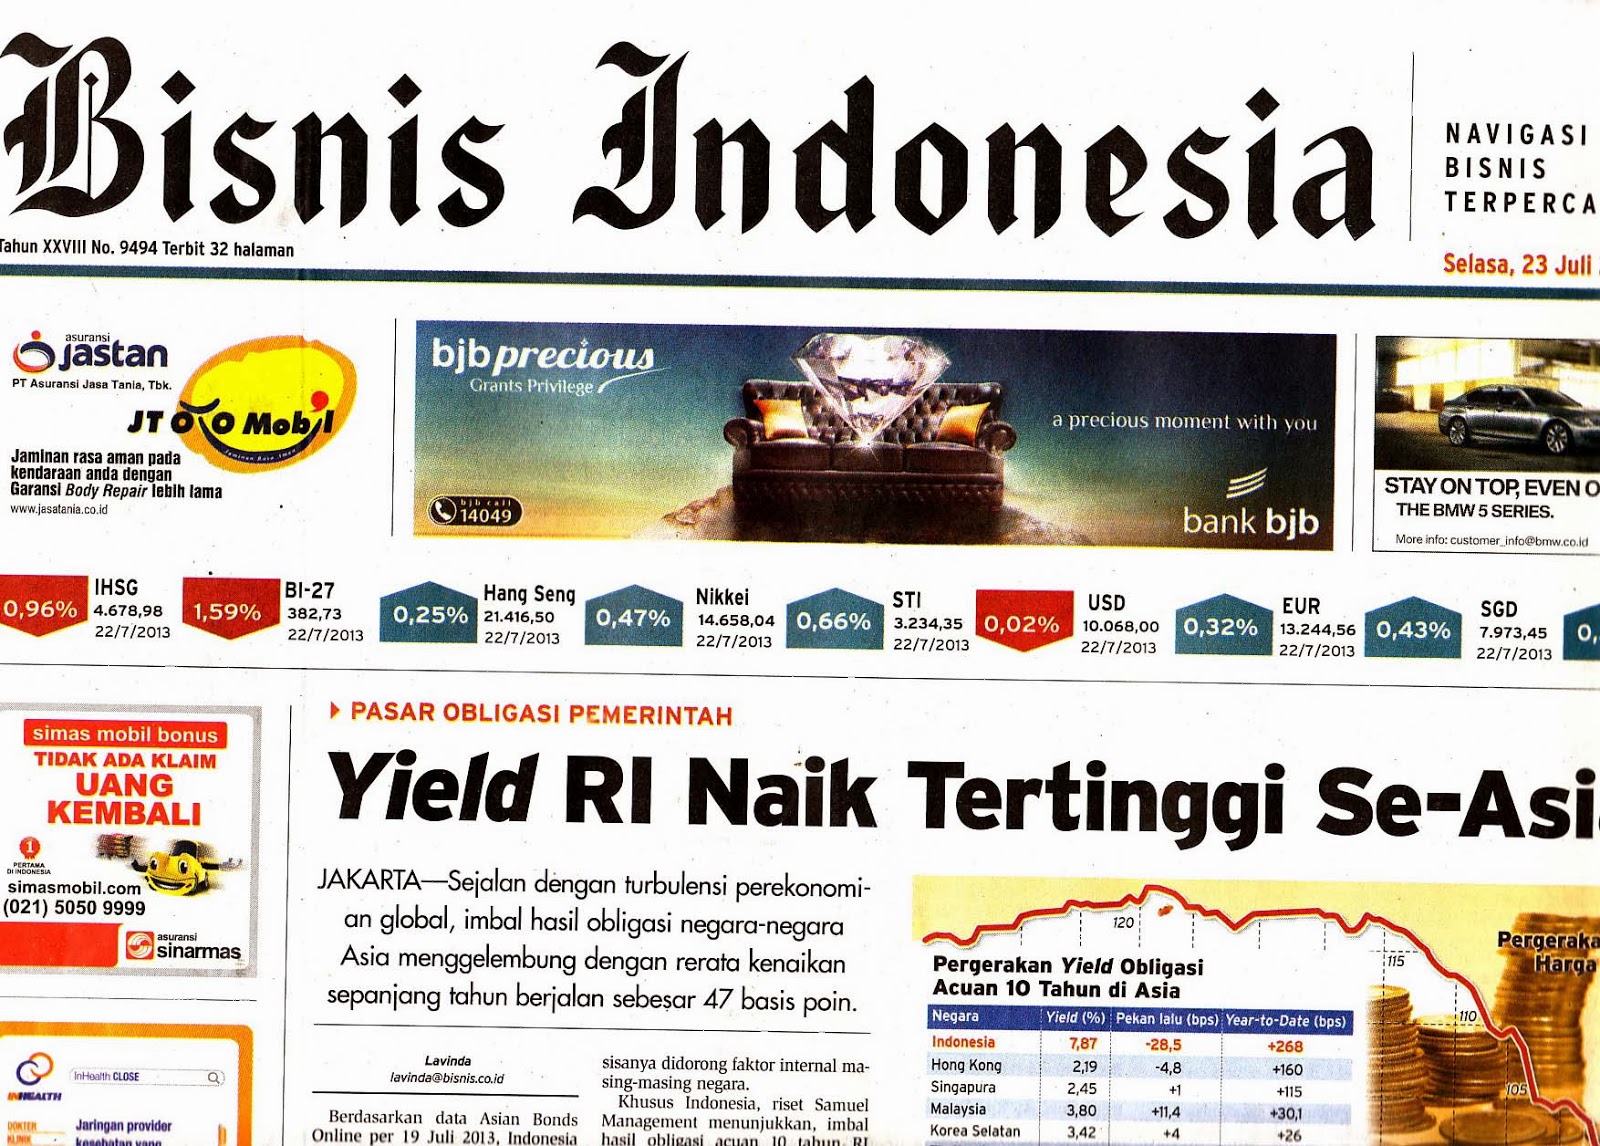 Koleksi K. Atmojo 2: Koran: "Bisnis Indonesia" Tahun 2013